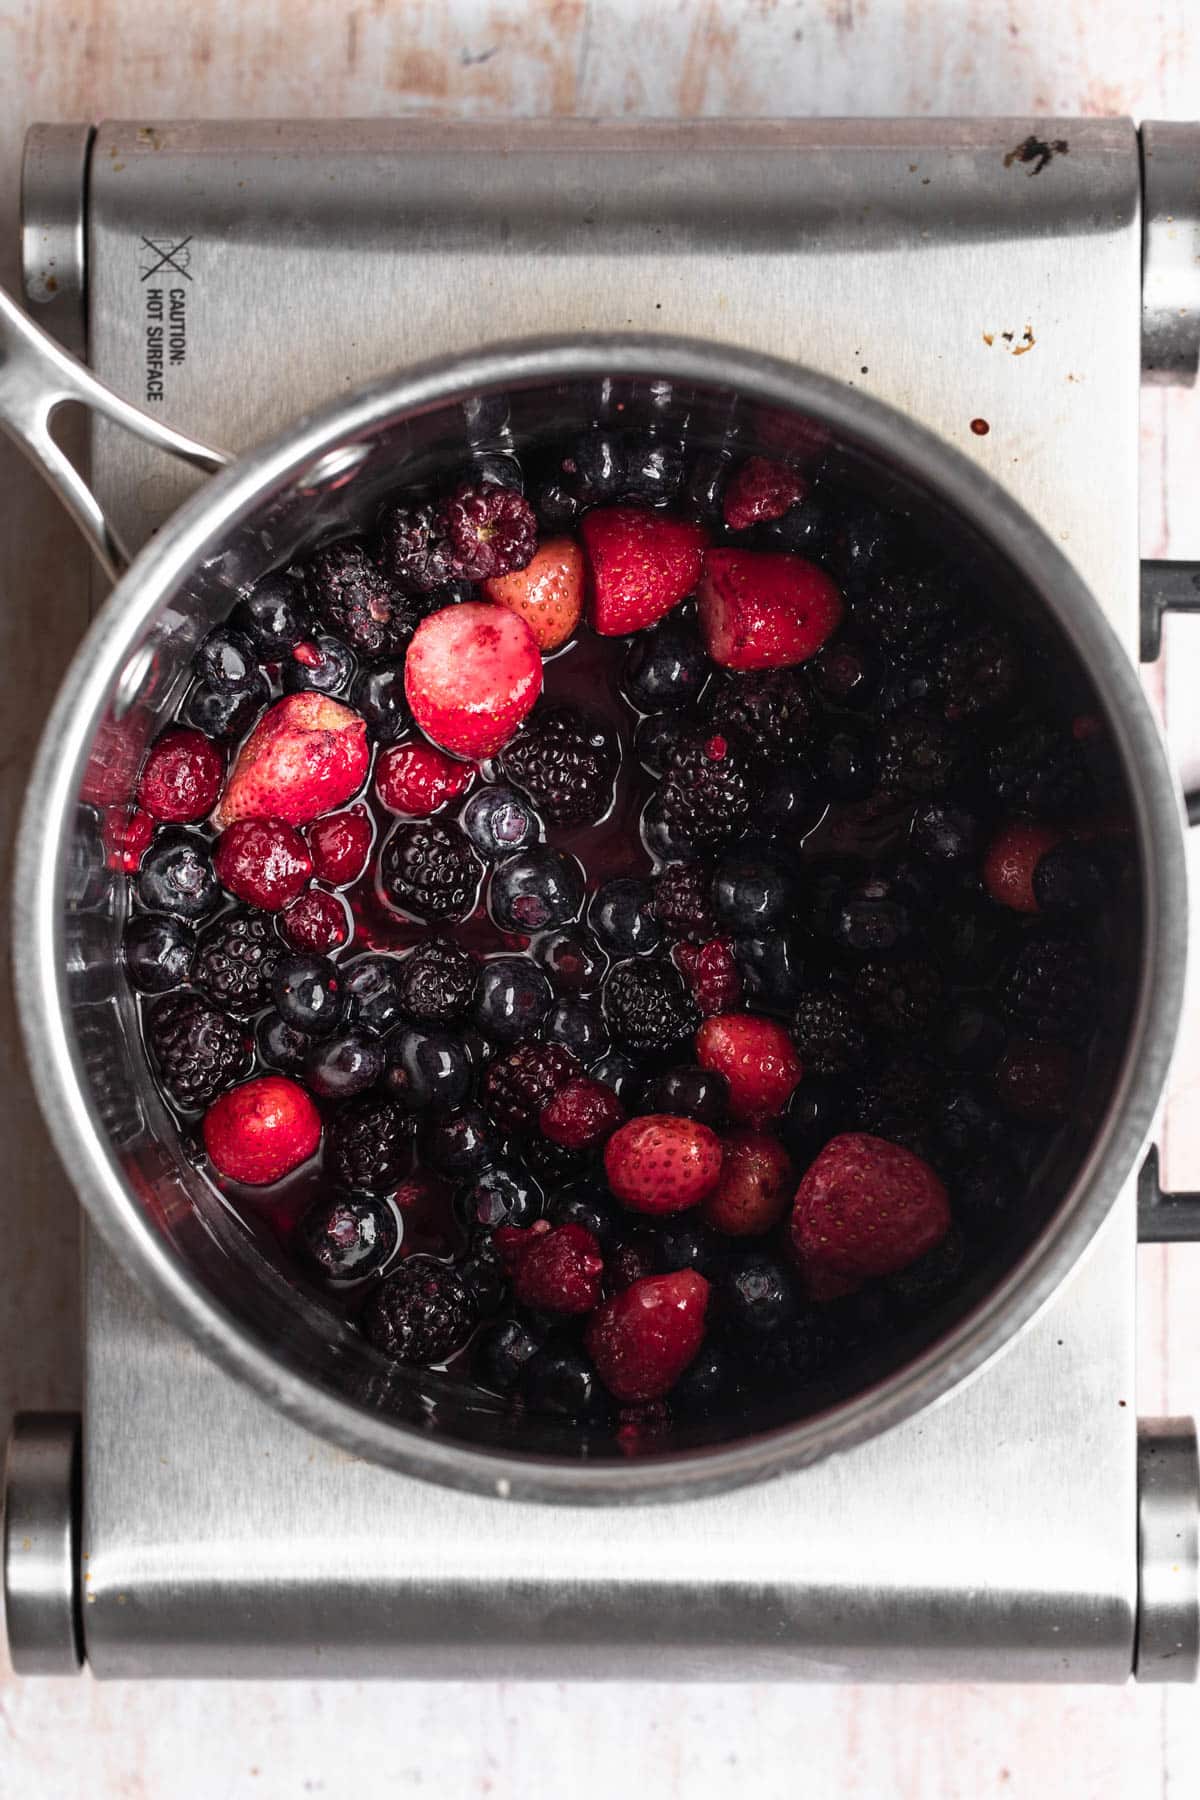 Frozen mixed berries in a saucepan.